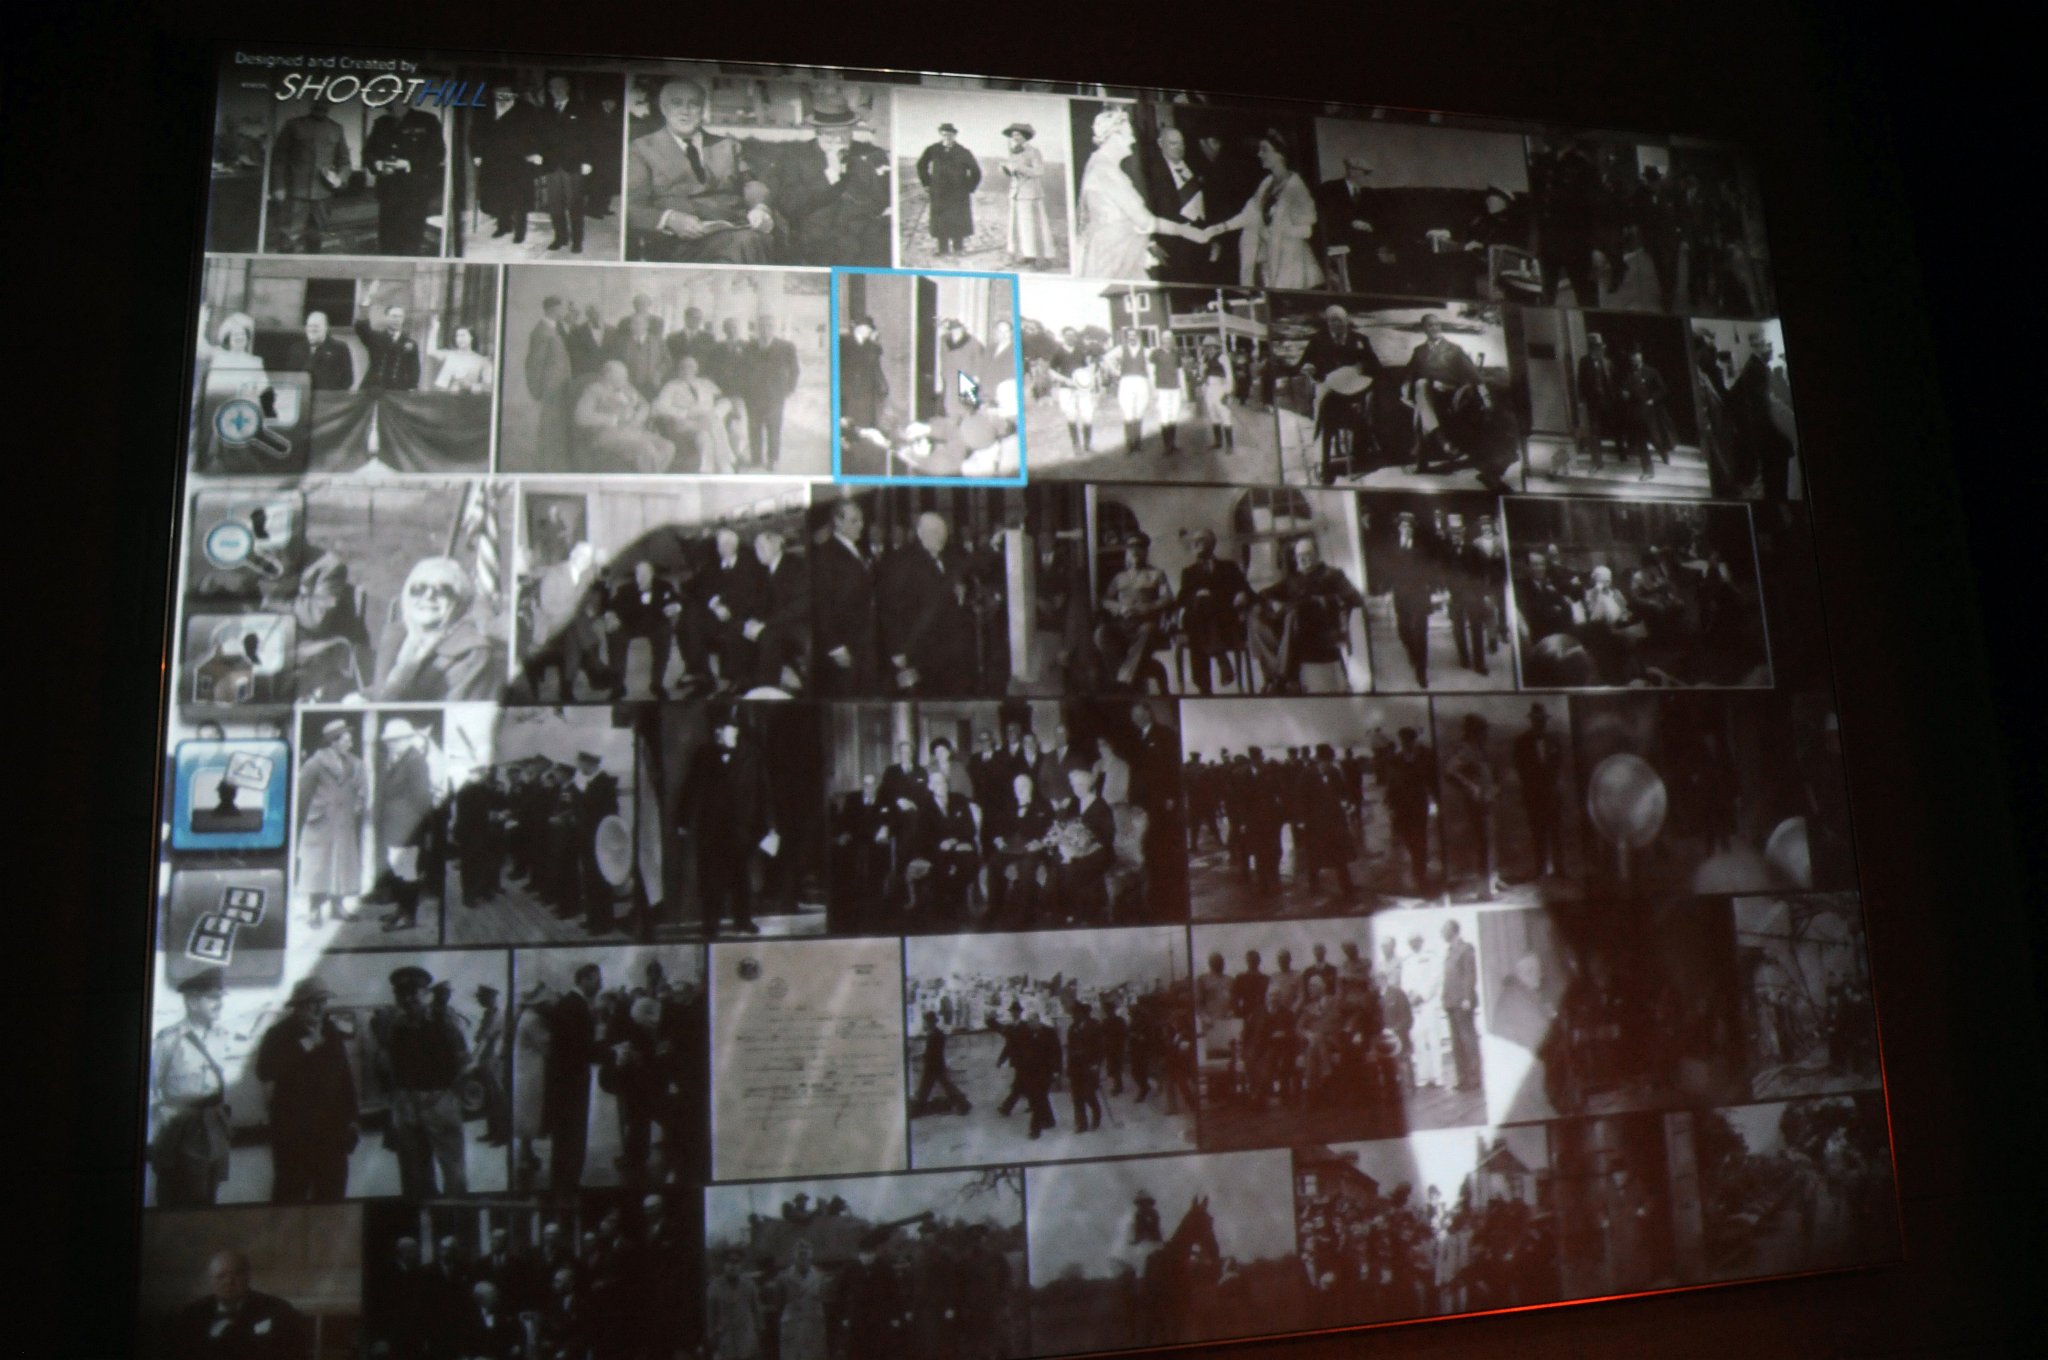 DSC_6495_1.jpg - Přiblížením z velkého obrazu Churchilla se zobrazí menší obrázky, které je možné následně otevírat jeden po druhém. Některé obrázky pak skrývají videa.